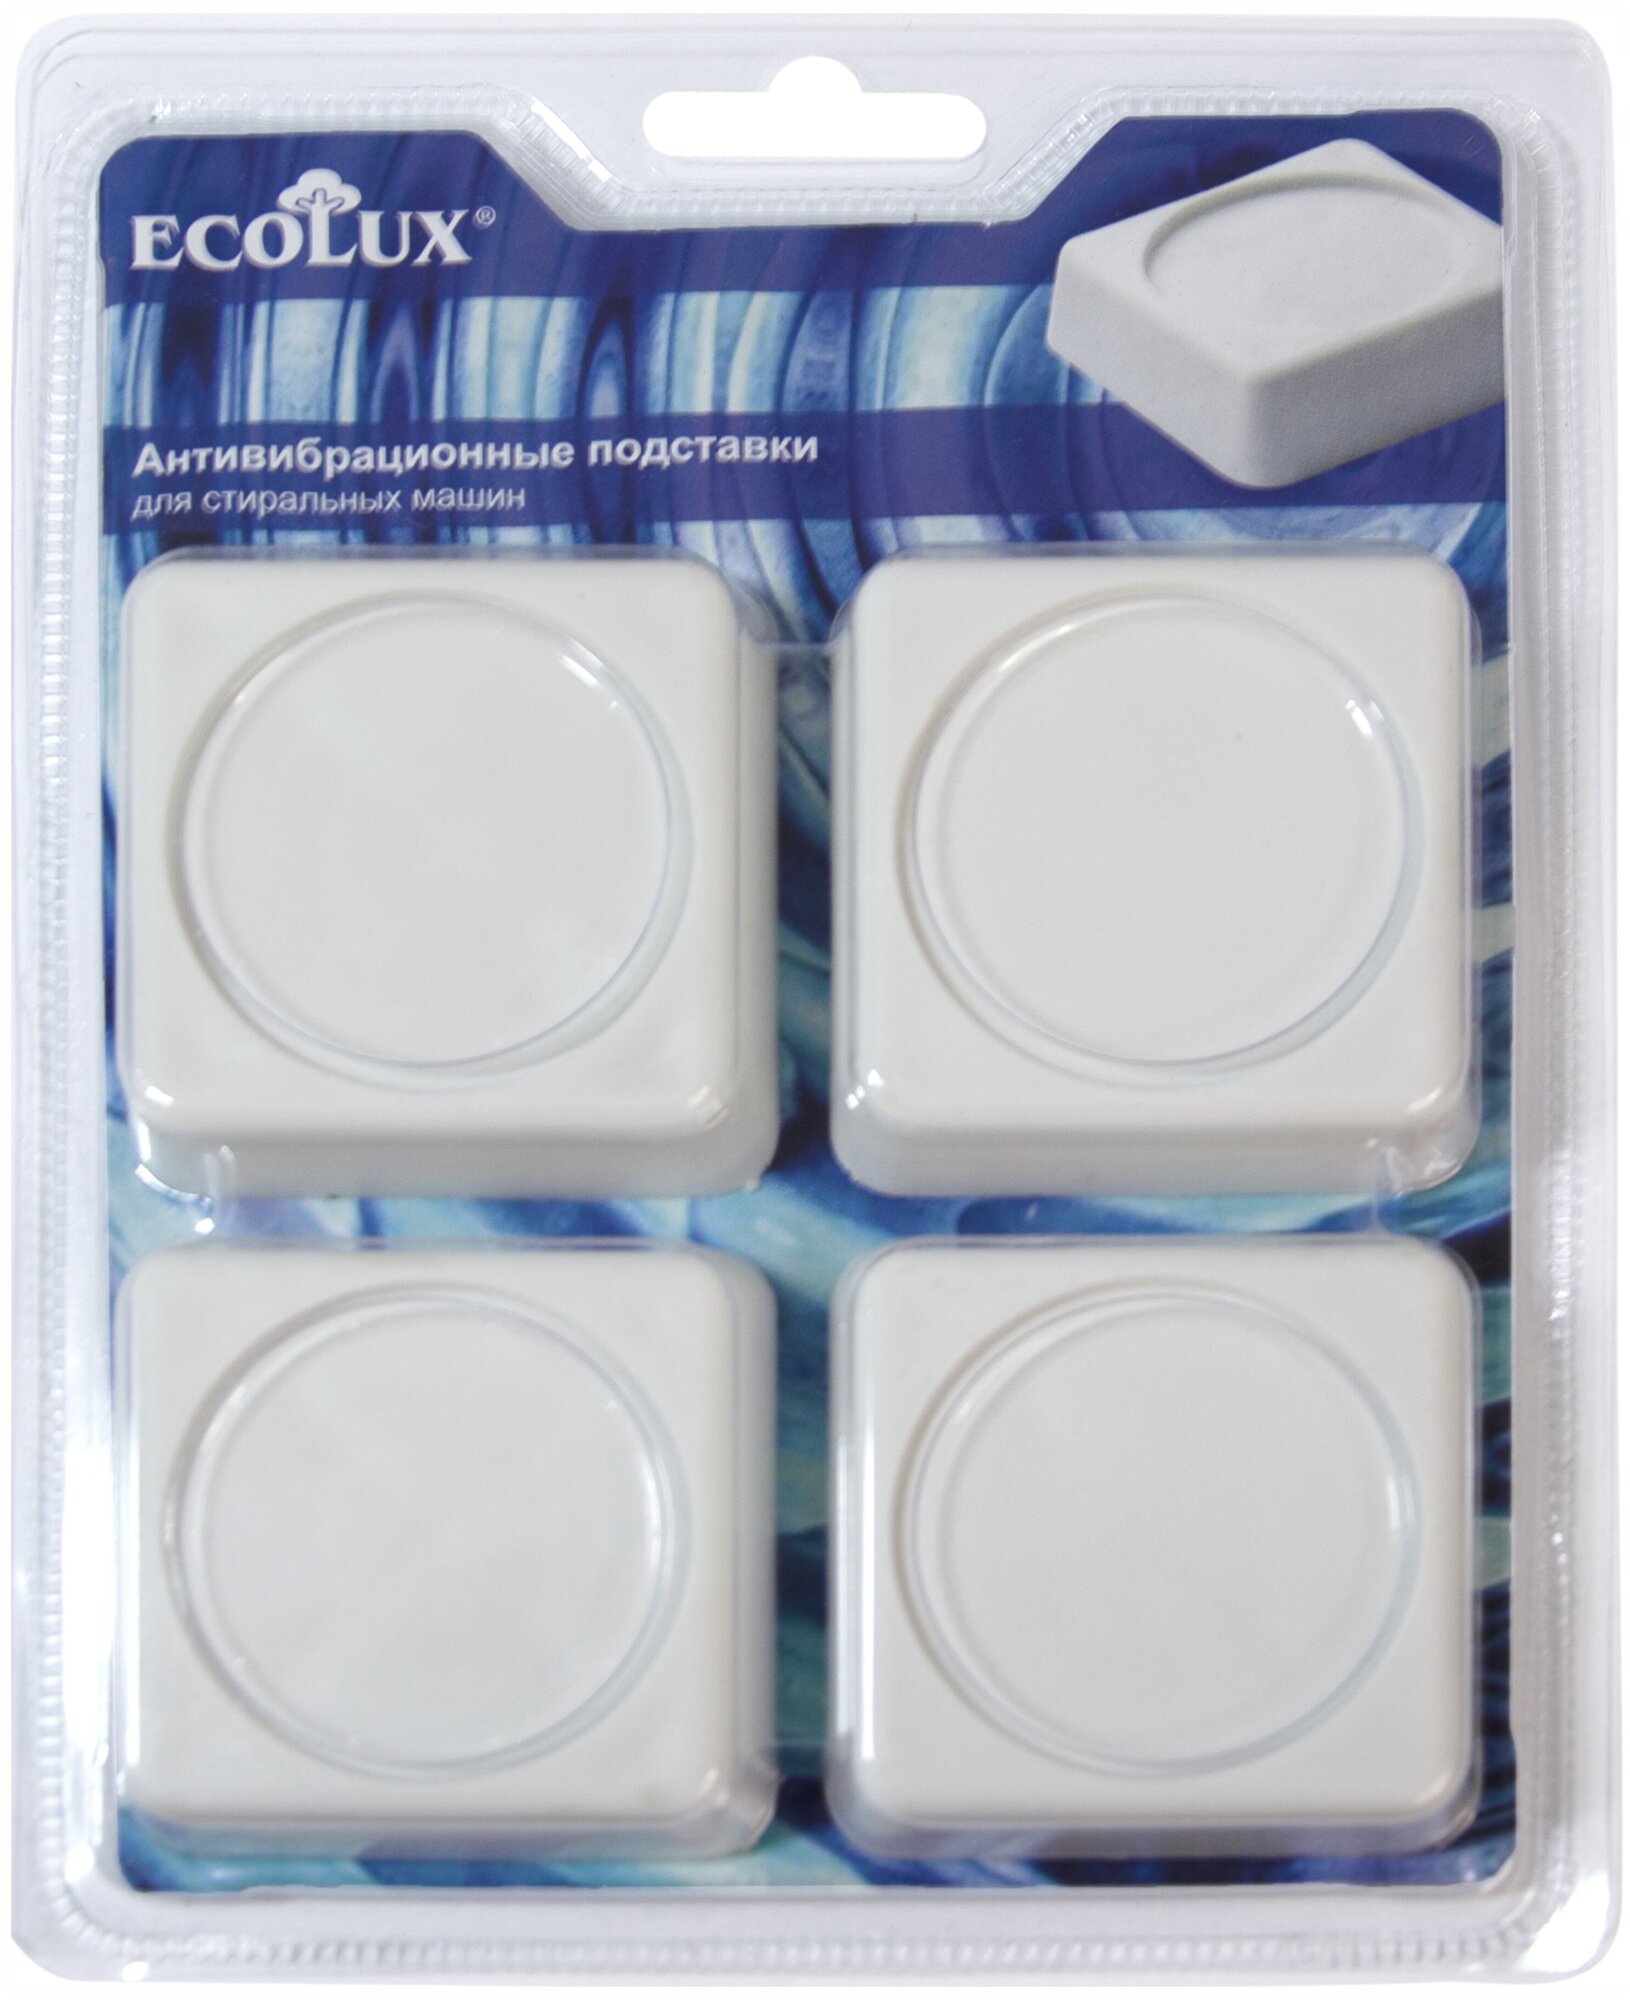 Ecolux Подставки белые антивибрационные квадратные для стиральных машин, 4 шт, AV00